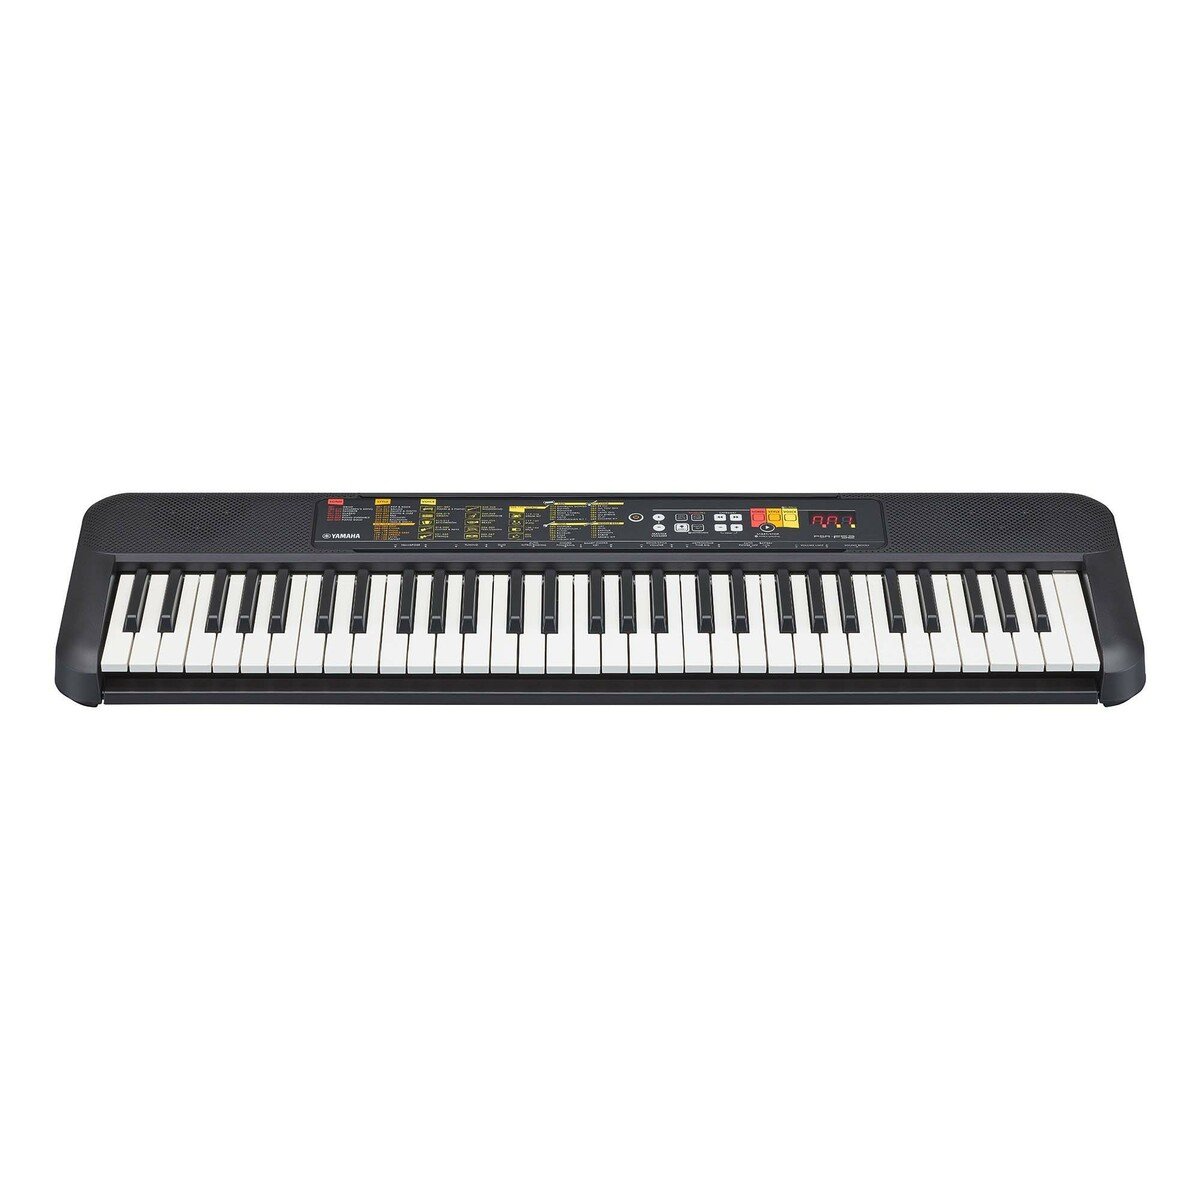 Yamaha Portable Keyboard PSR-F52